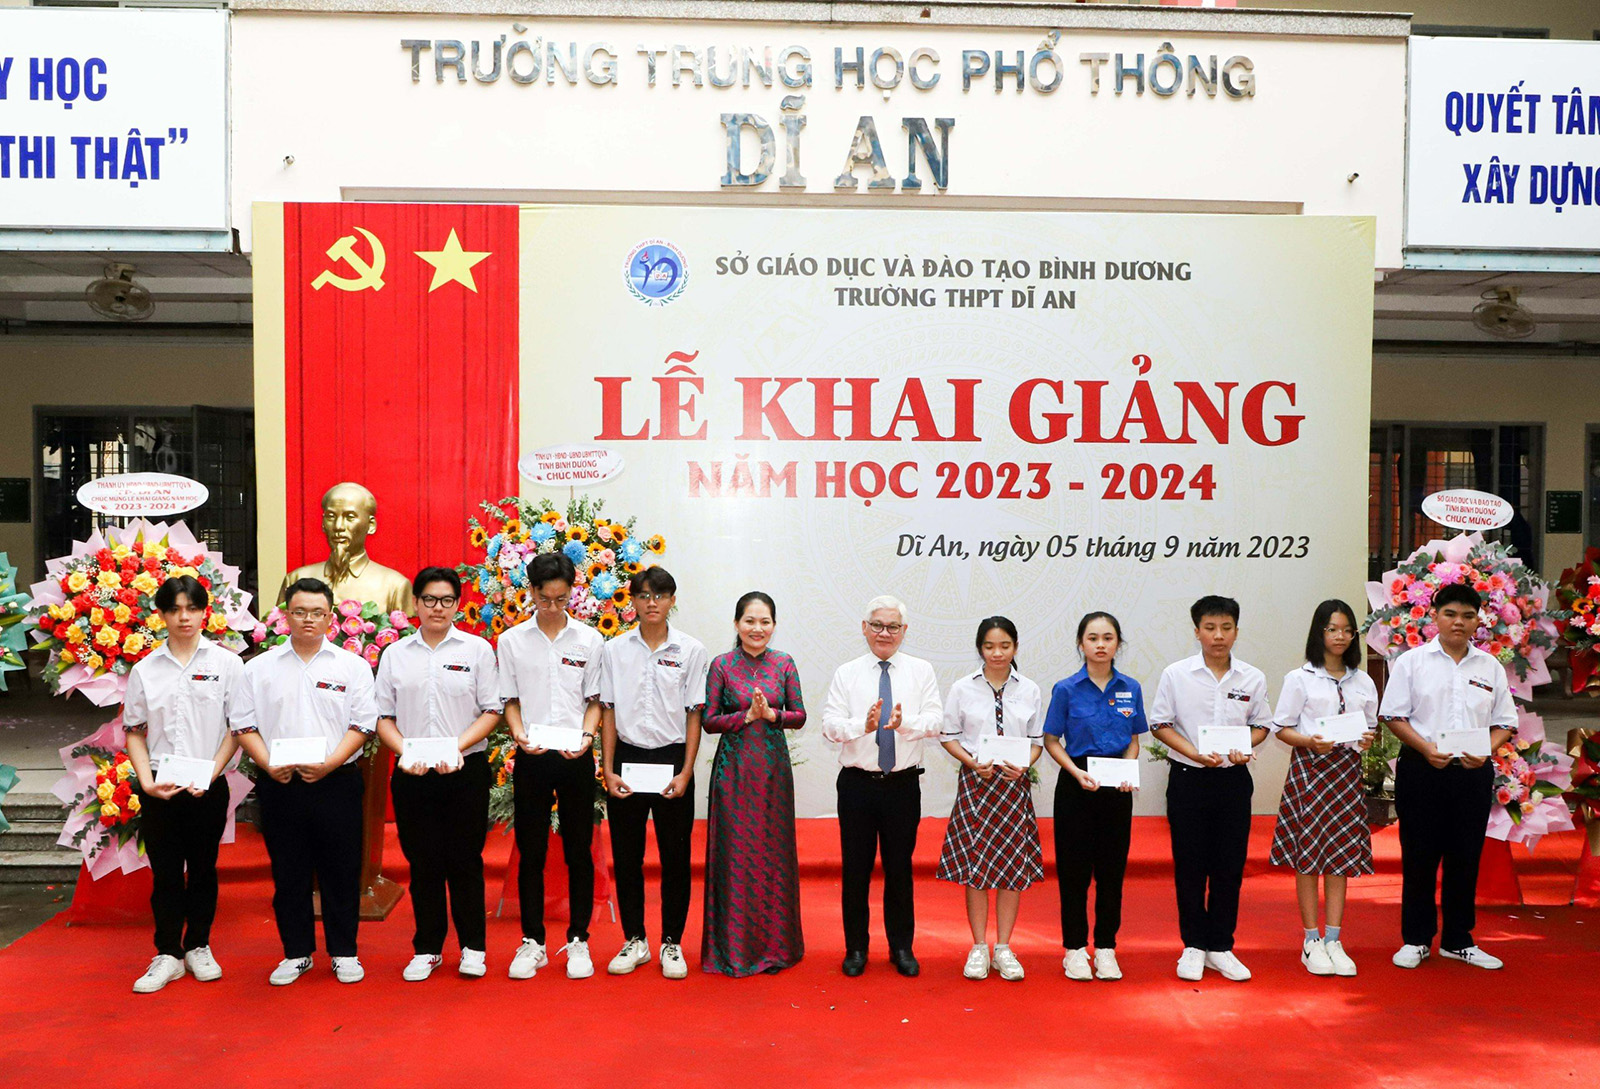 Bí thư Tỉnh ủy Bình Dương Nguyễn Văn Lợi chụp ảnh lưu niệm cùng giáo viên và học sinh Trường THPT Dĩ An - Bình Dương.